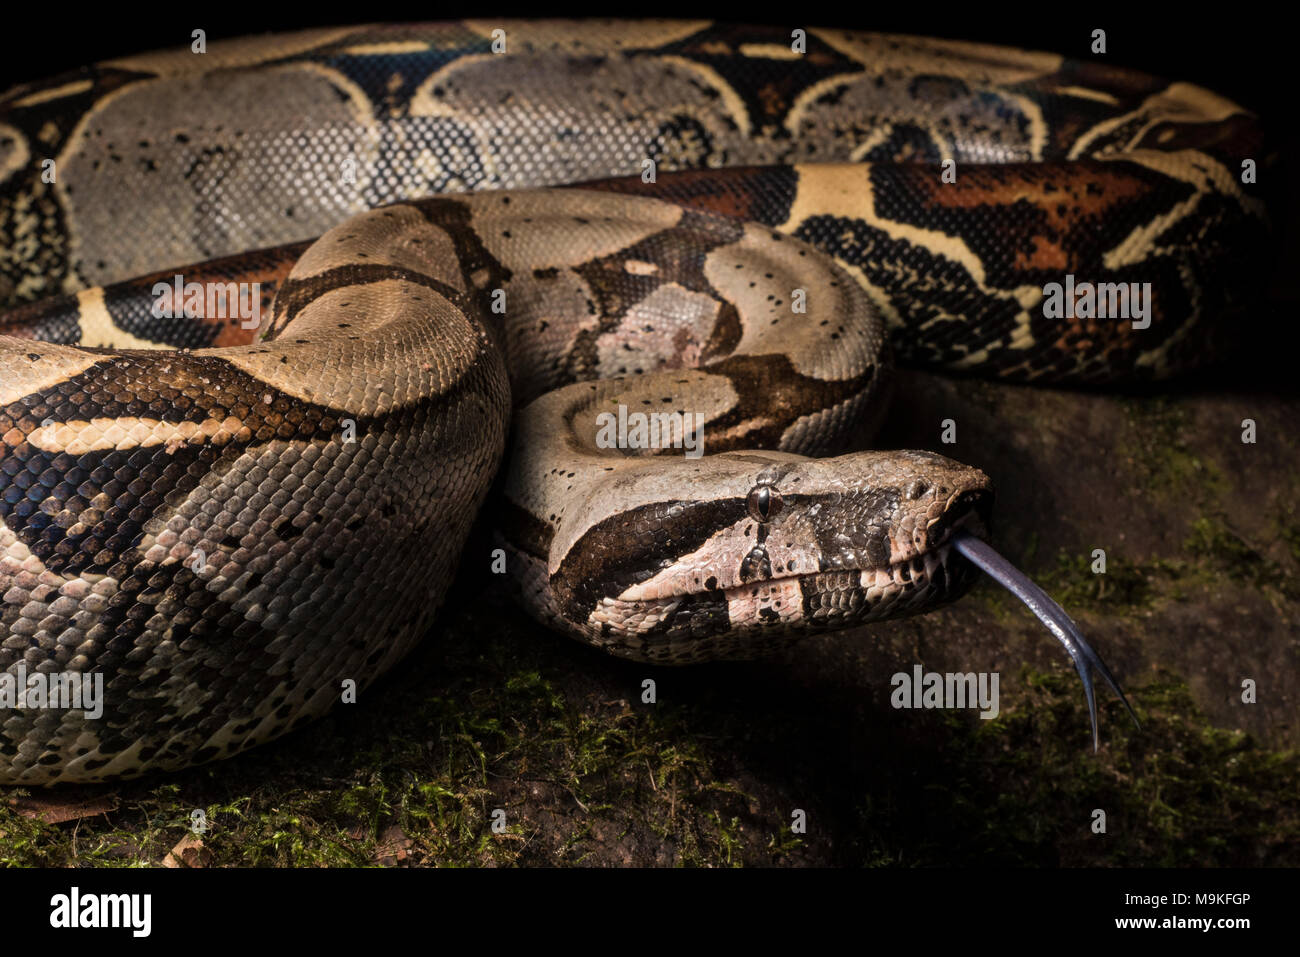 Uno dei più imponenti neotropical serpenti, il Boa constrictor! Una grande e bella Snake questo è stato trovato nella giungla del nord del Perù. Foto Stock